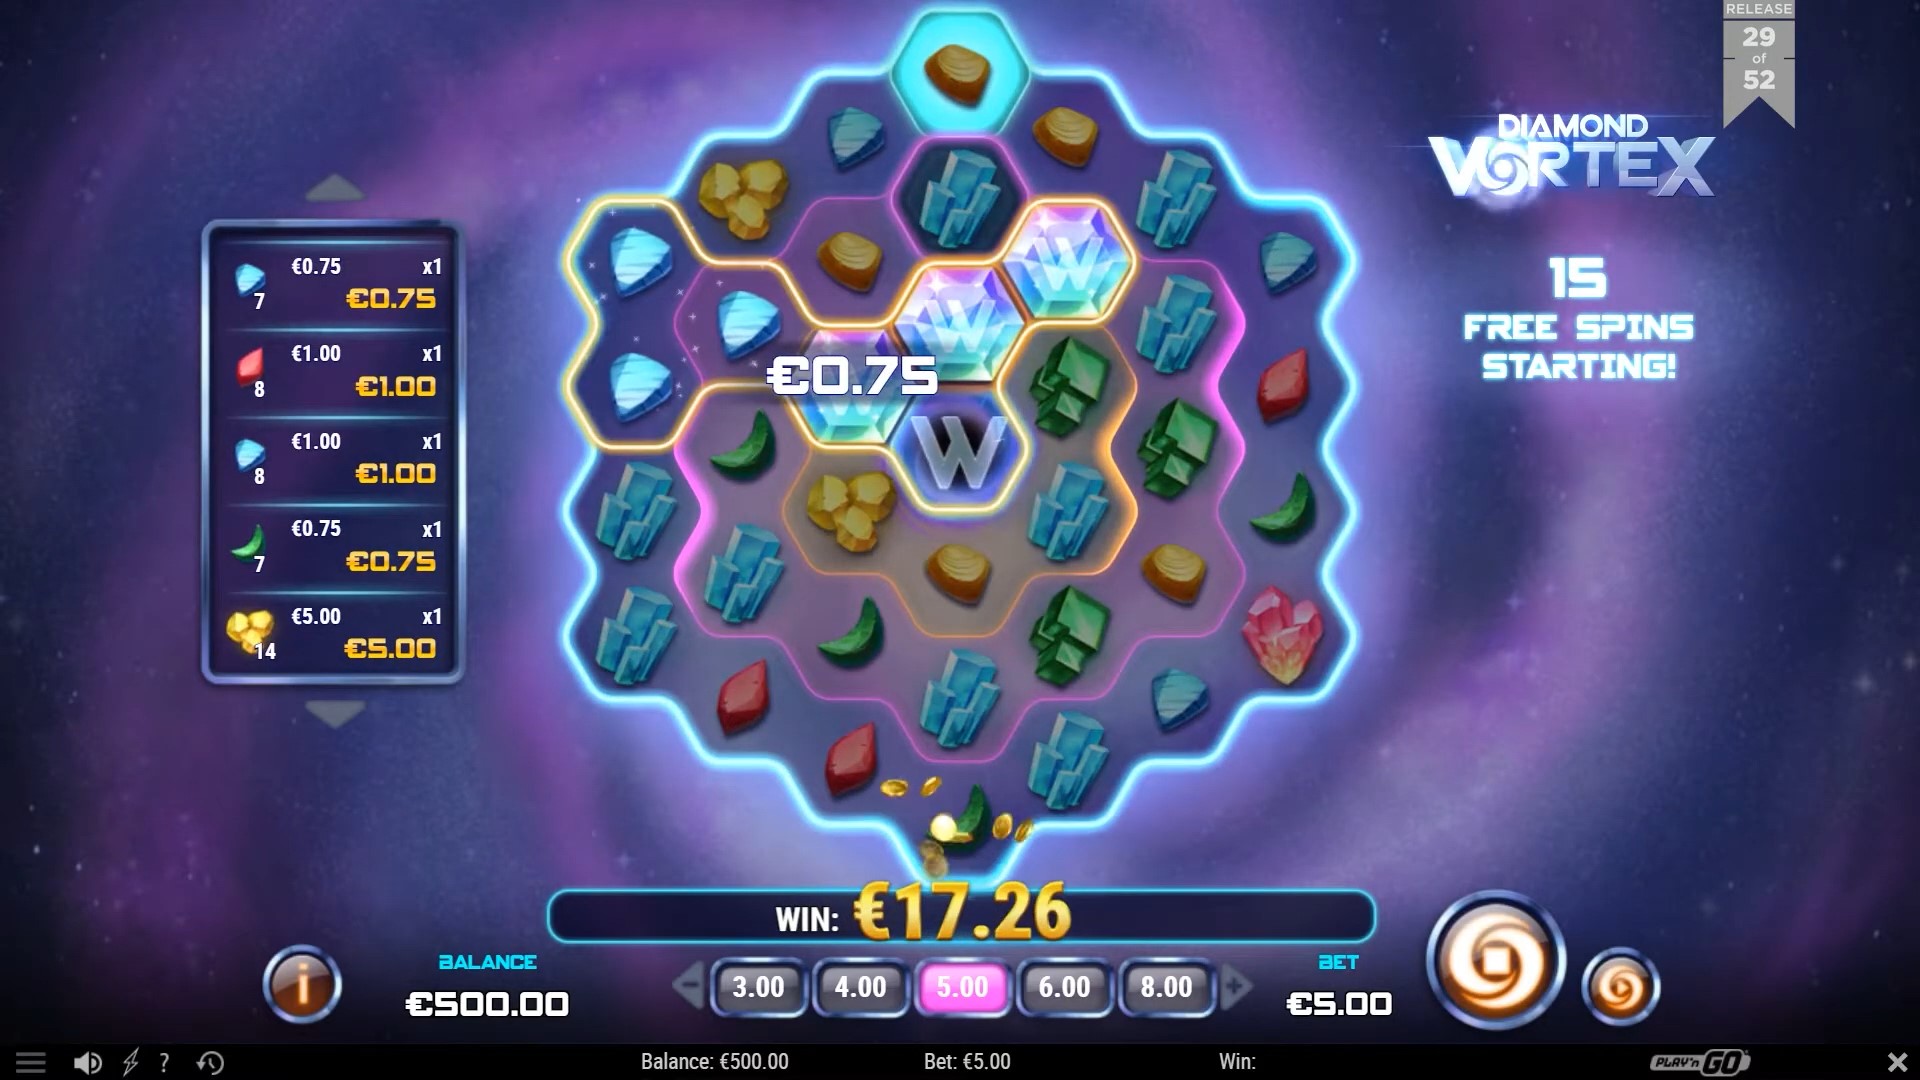 Diamond Vortex win 2 Playn GO